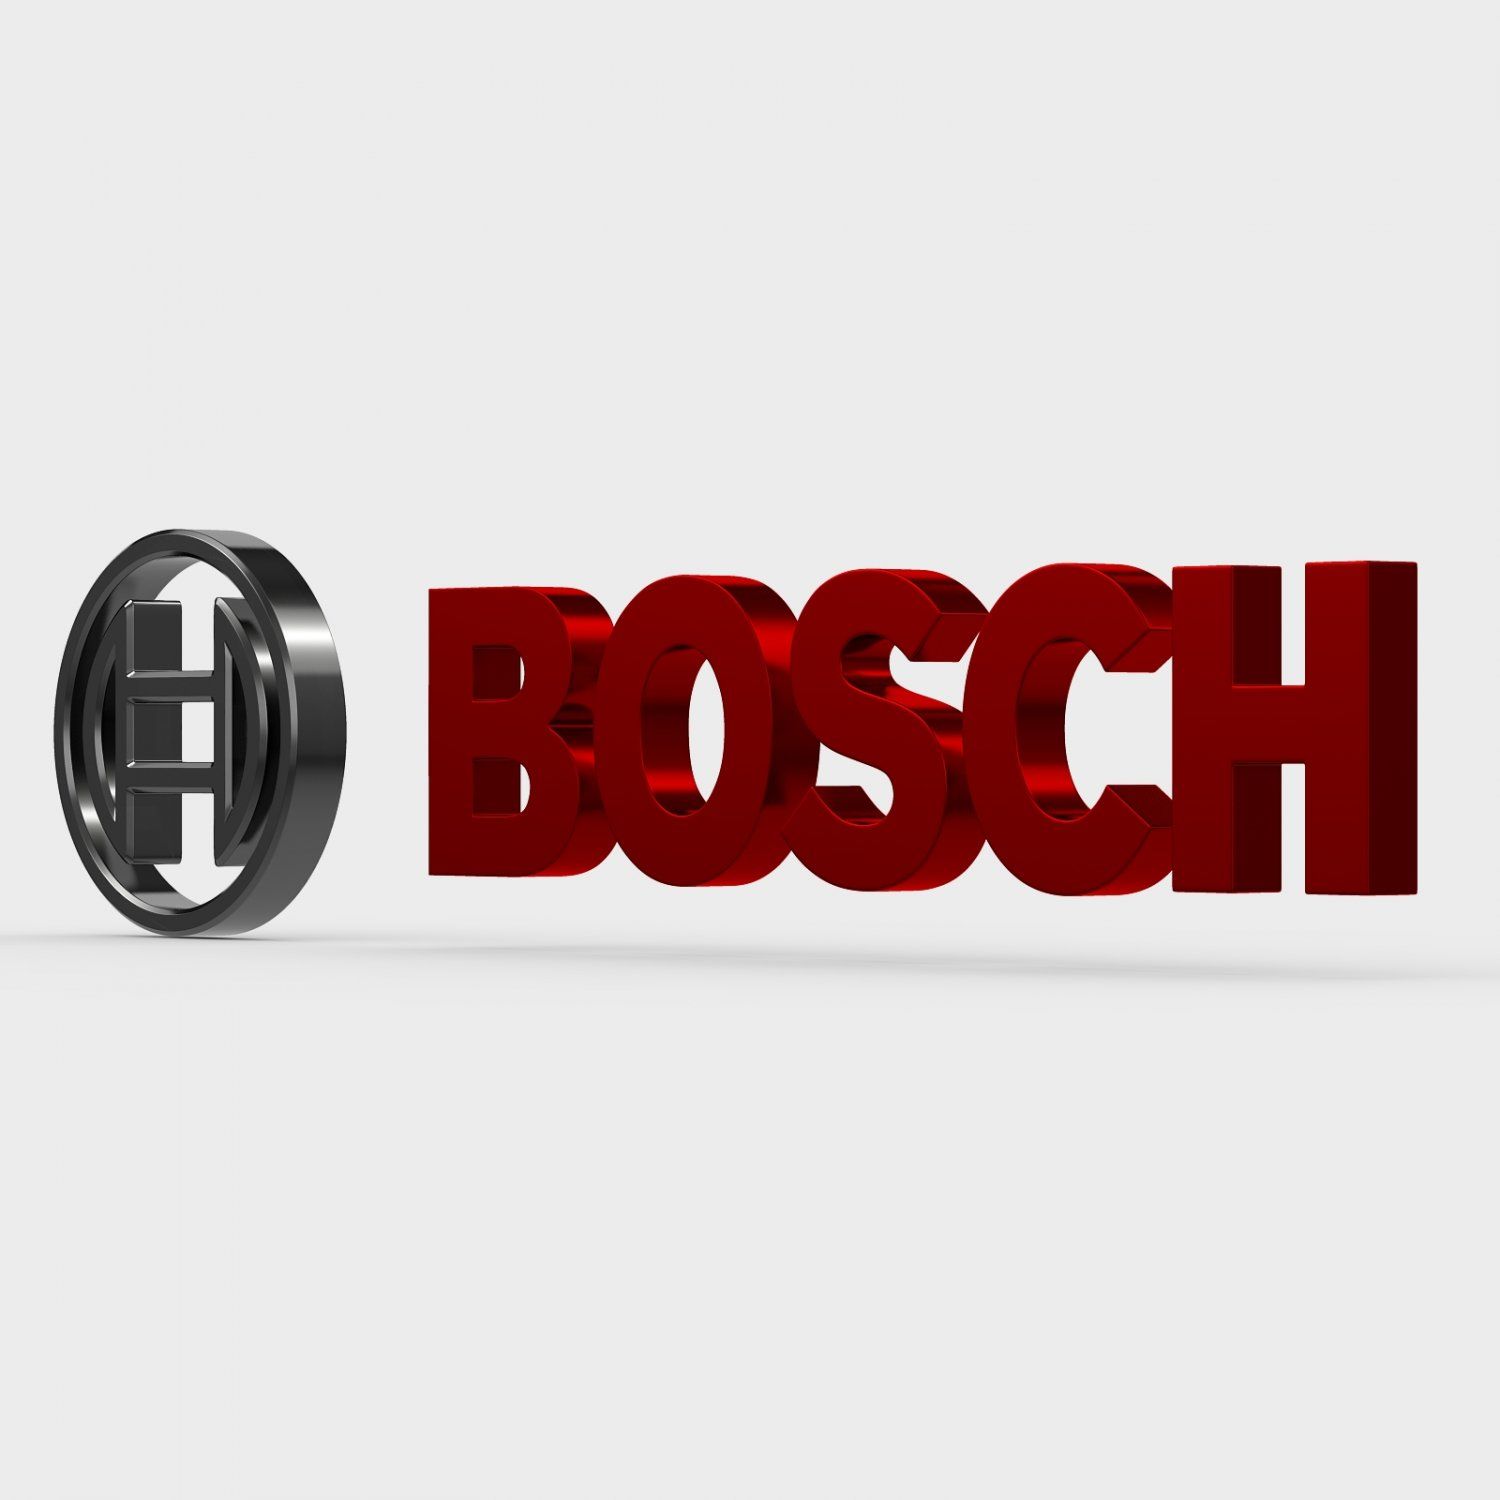 Členové odborové organizace Prolibertate Bosch se rozhodli podpořit jednoho ze svých kolegů